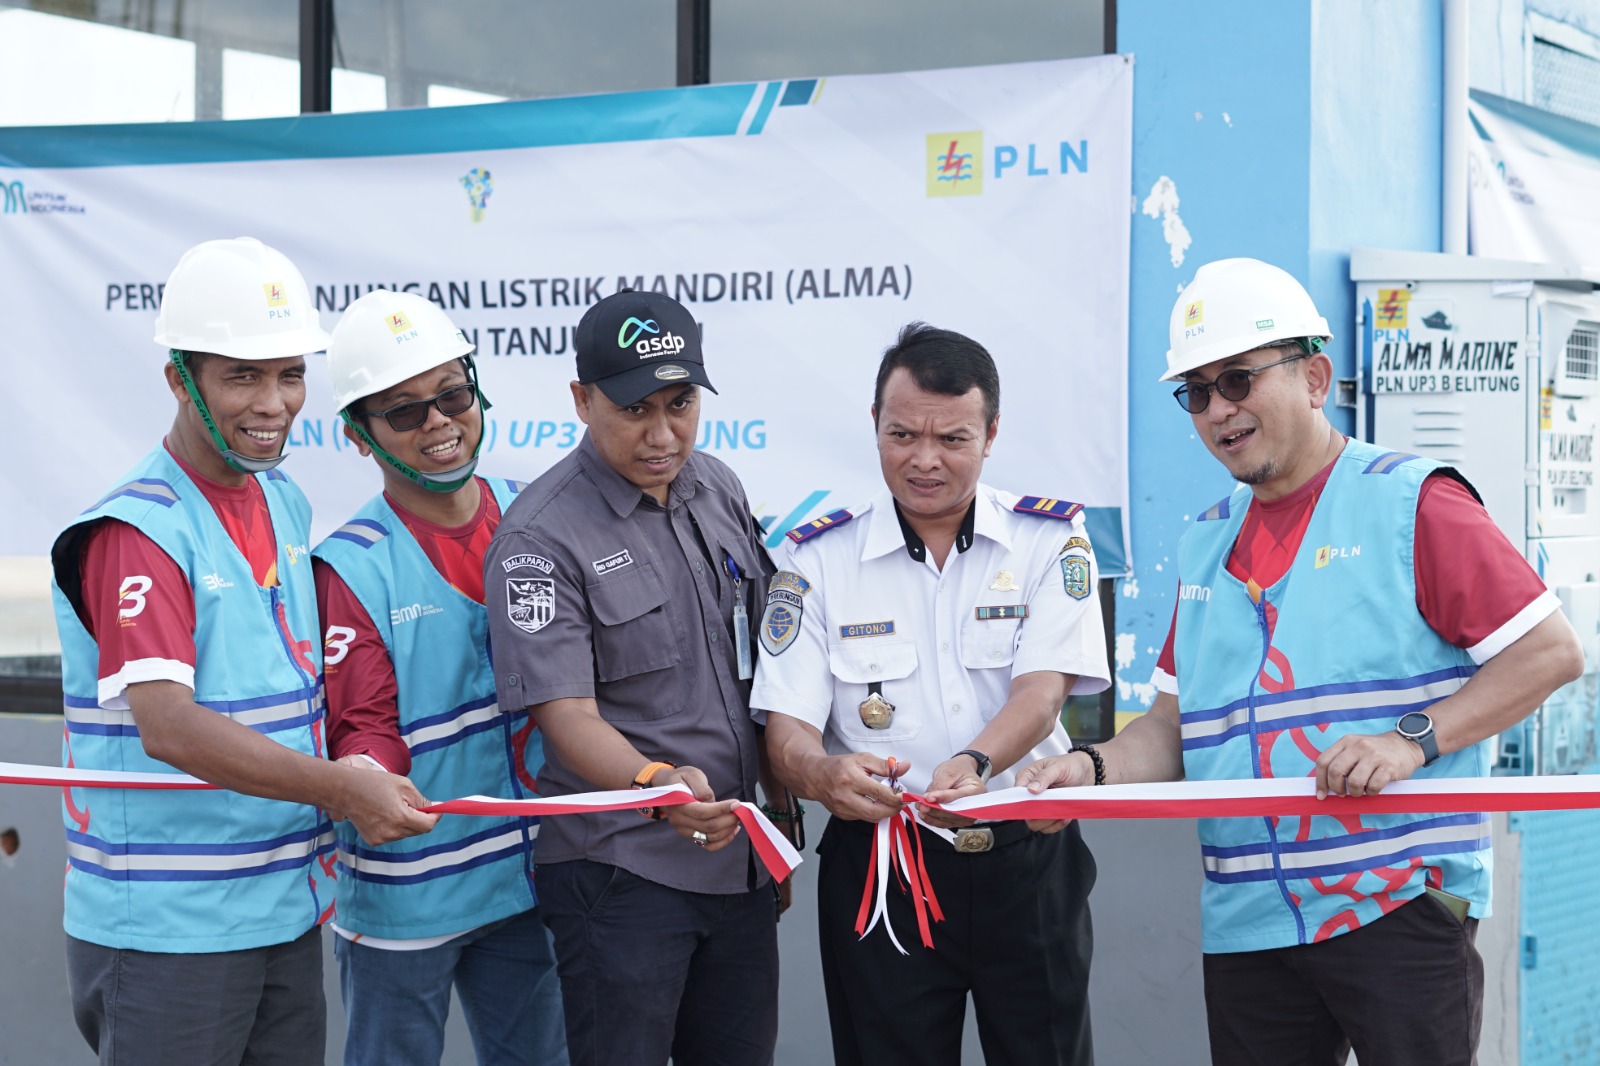 Dukung Ekonomi Maritim dan Energi Bersih, PLN Bangun Anjungan Listrik Mandiri di Pelabuhan Tanjung Ru Belitung